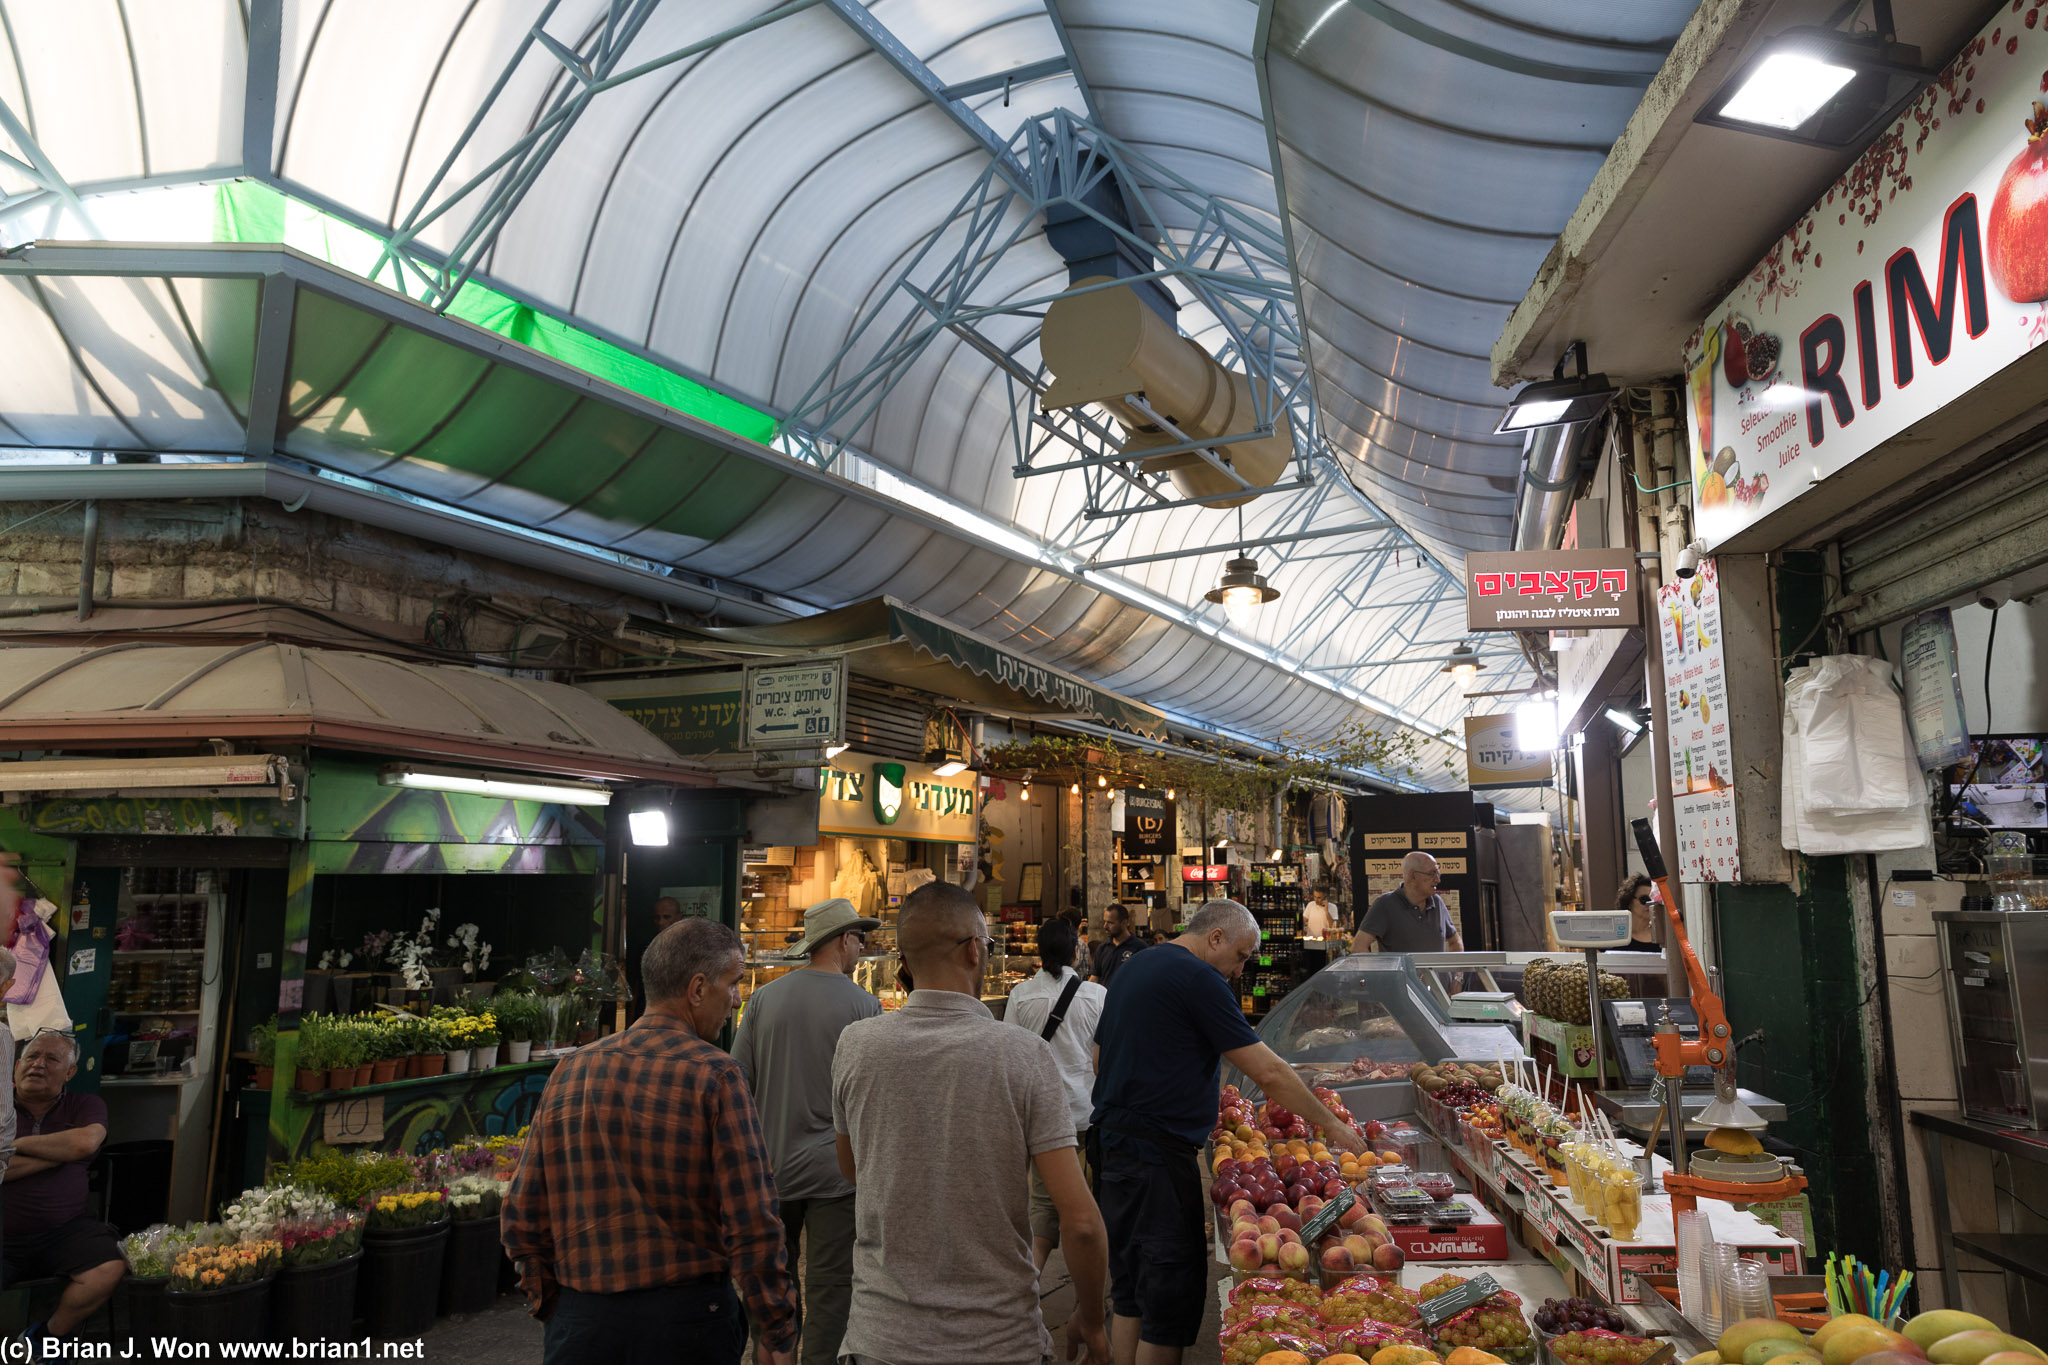 Back to Mahane Yehuda Market.